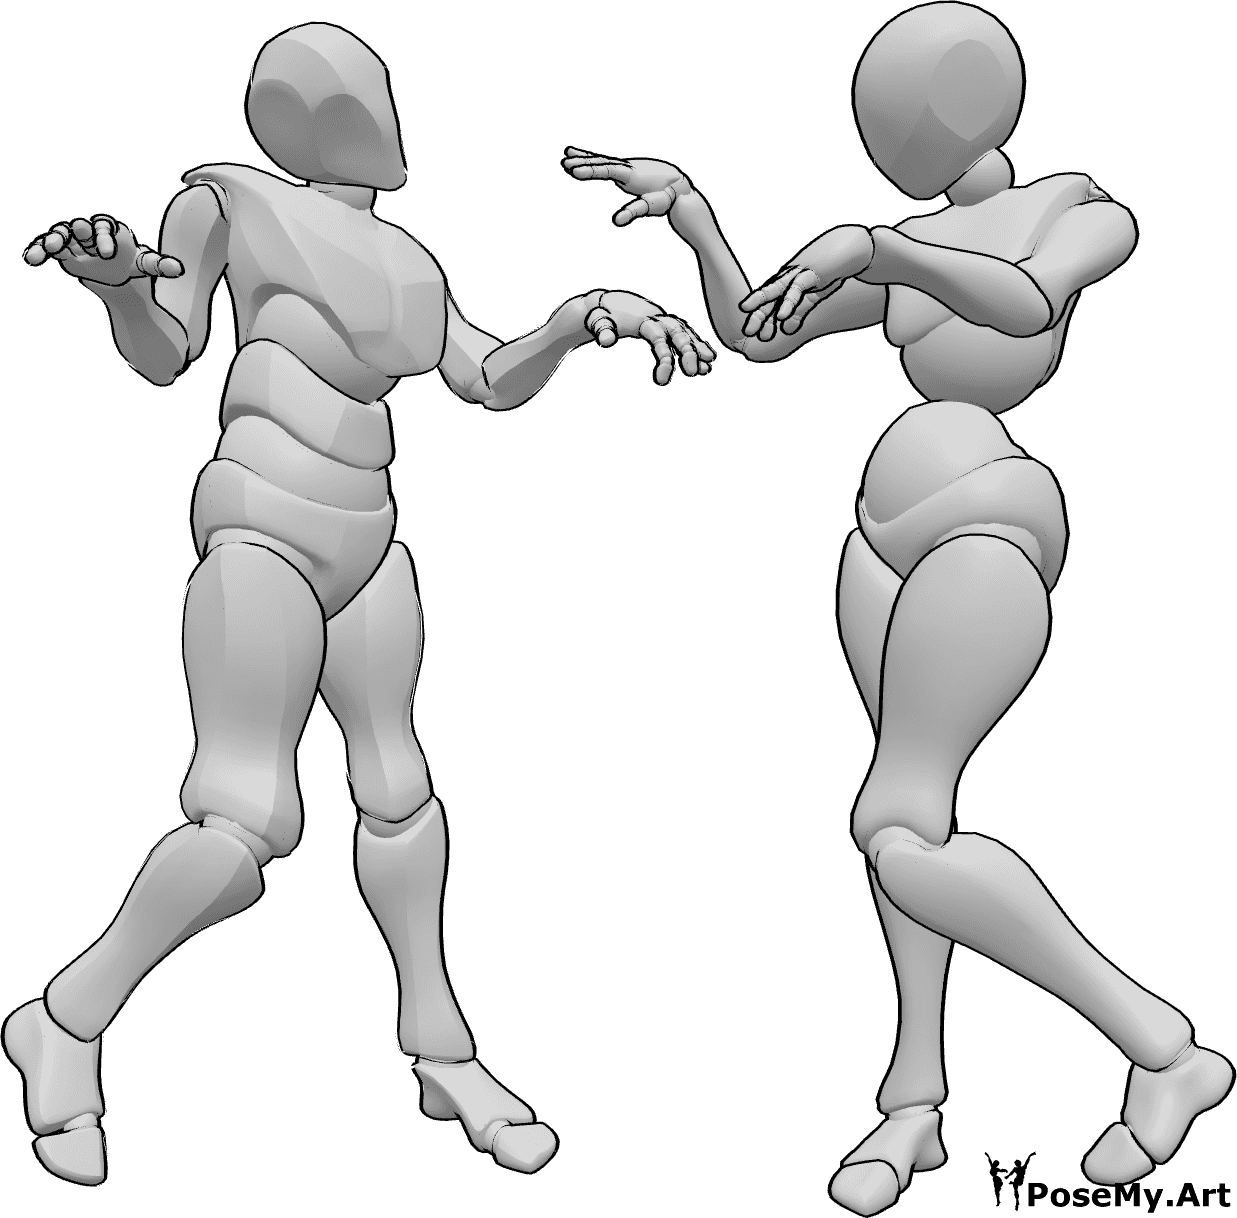 Riferimento alle pose- Coppia di zombie che balla in posa - Inquietante coppia di zombie femmina e maschio che balla insieme in posa